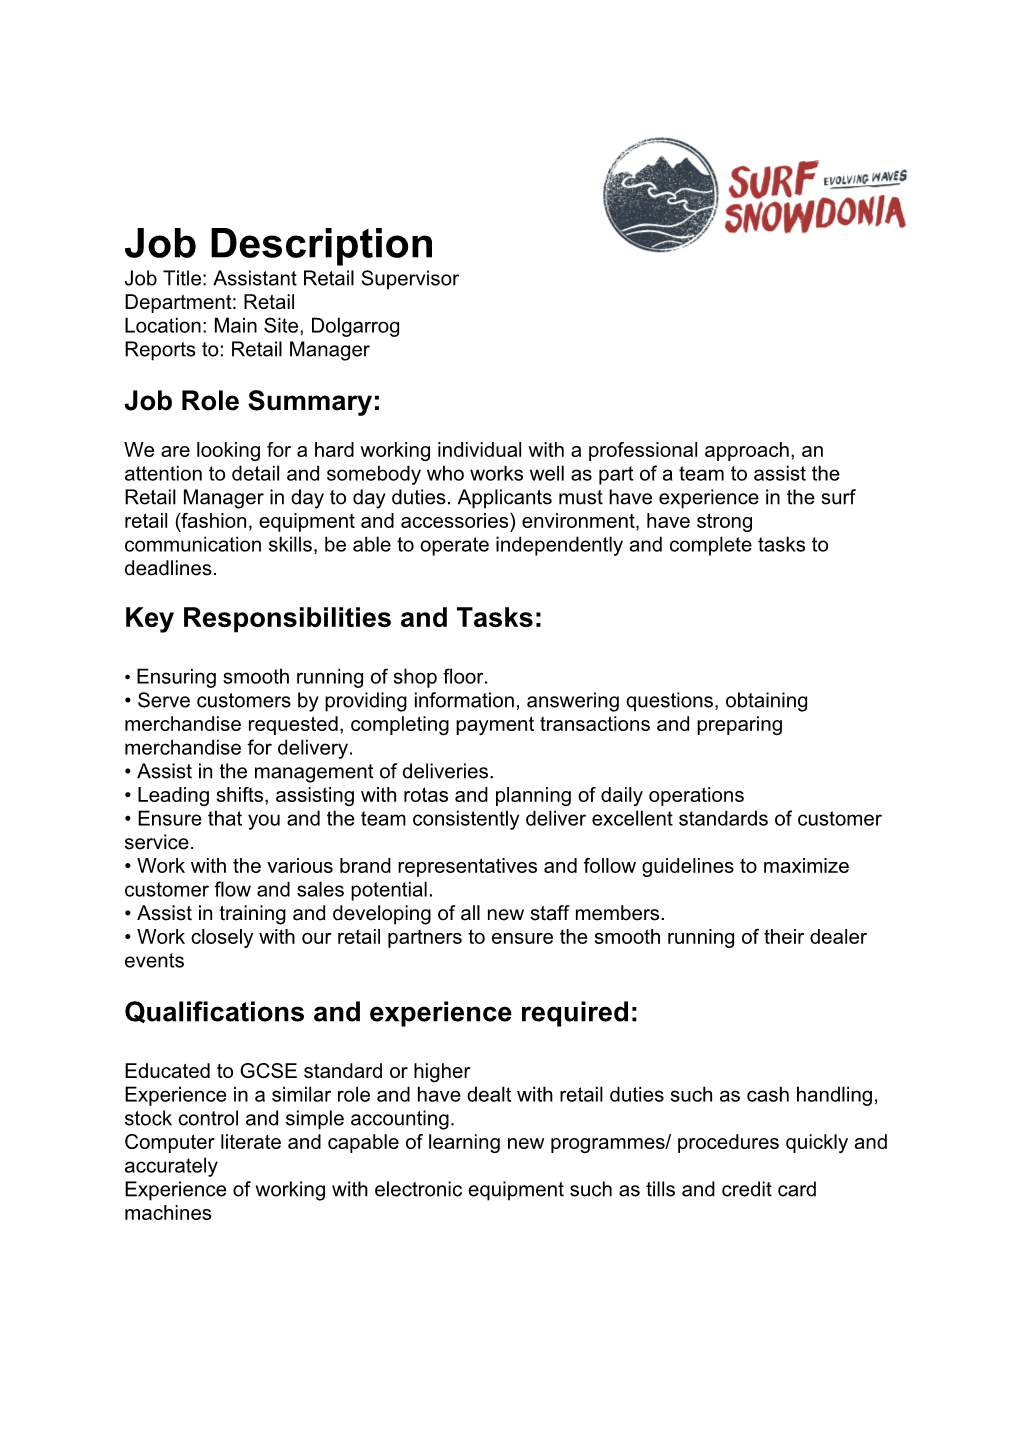 Job Title: Assistant Retail Supervisor